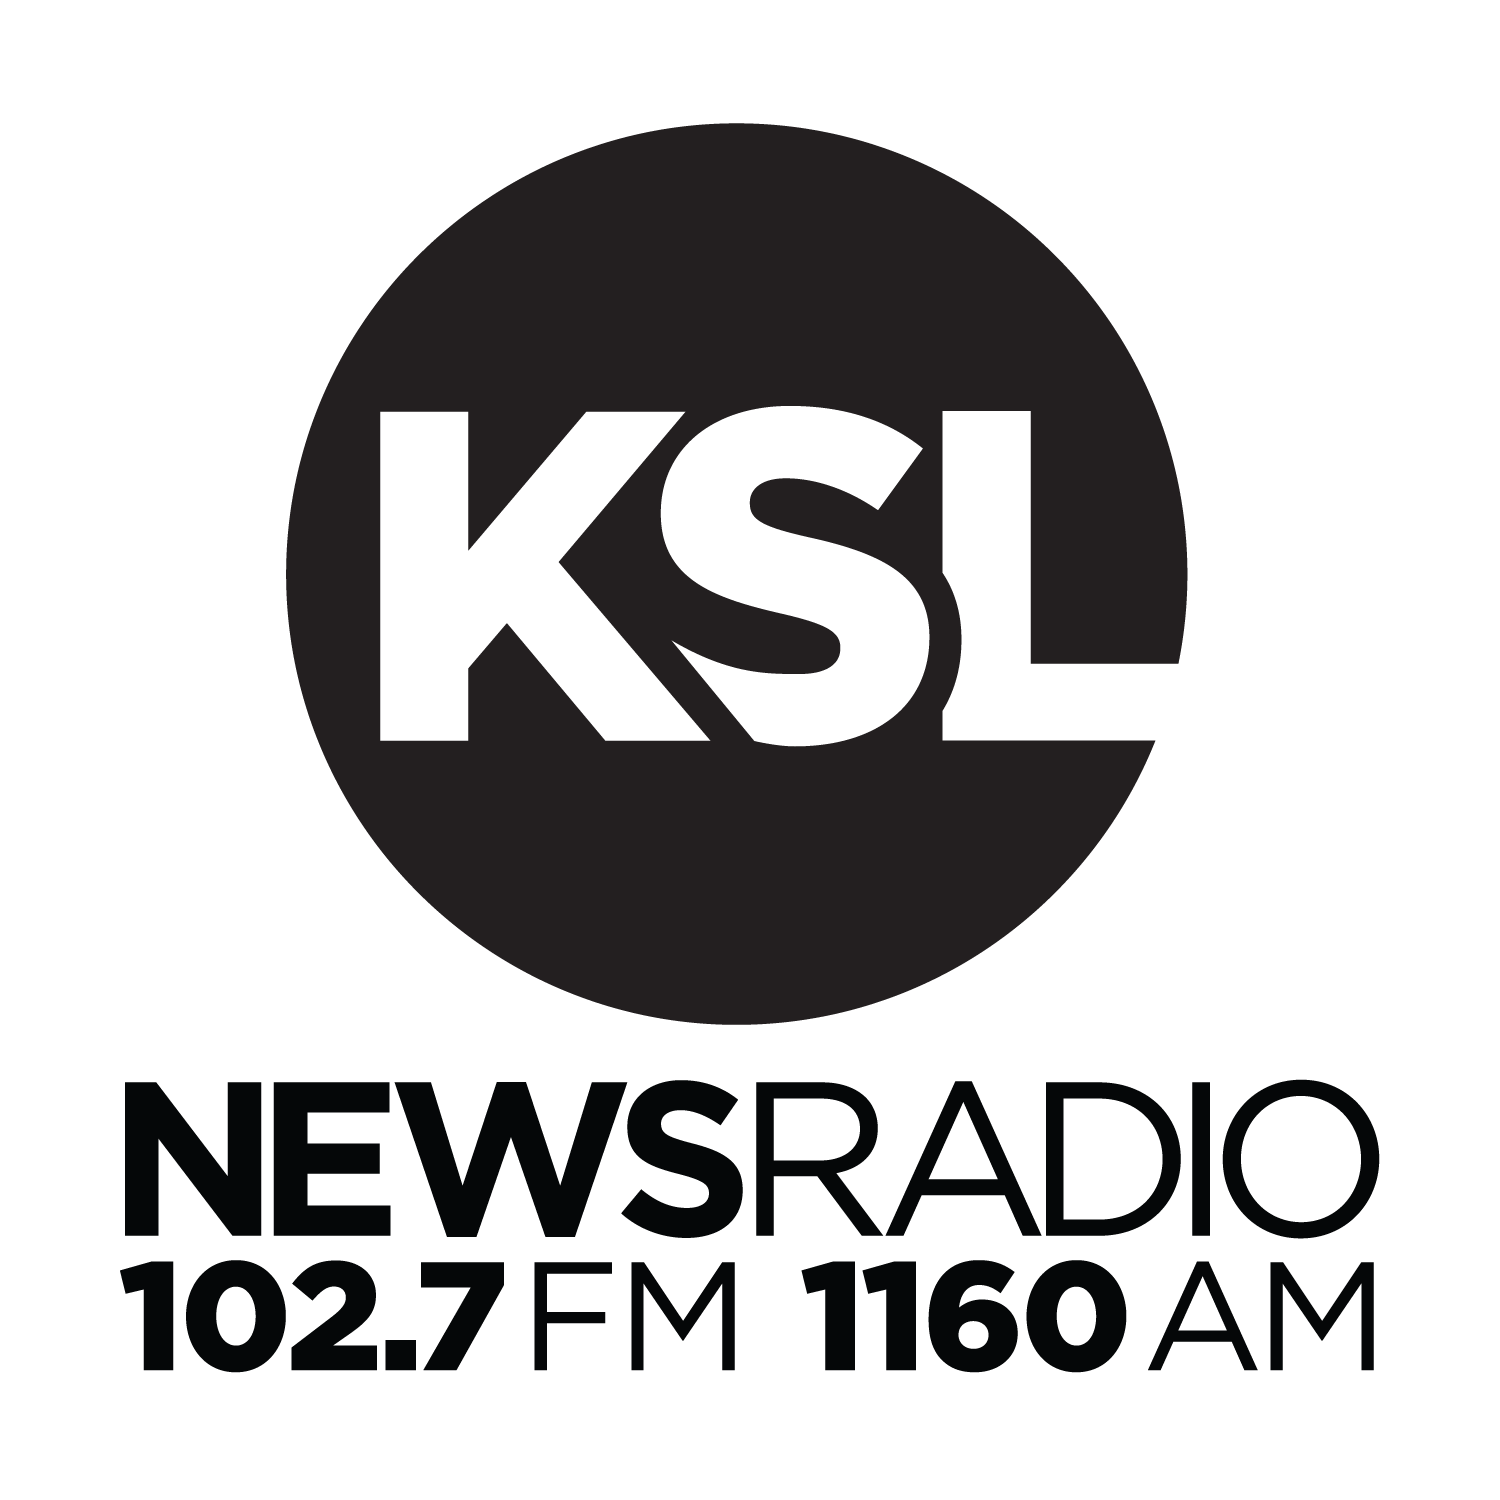 KSL NewsRadio logo